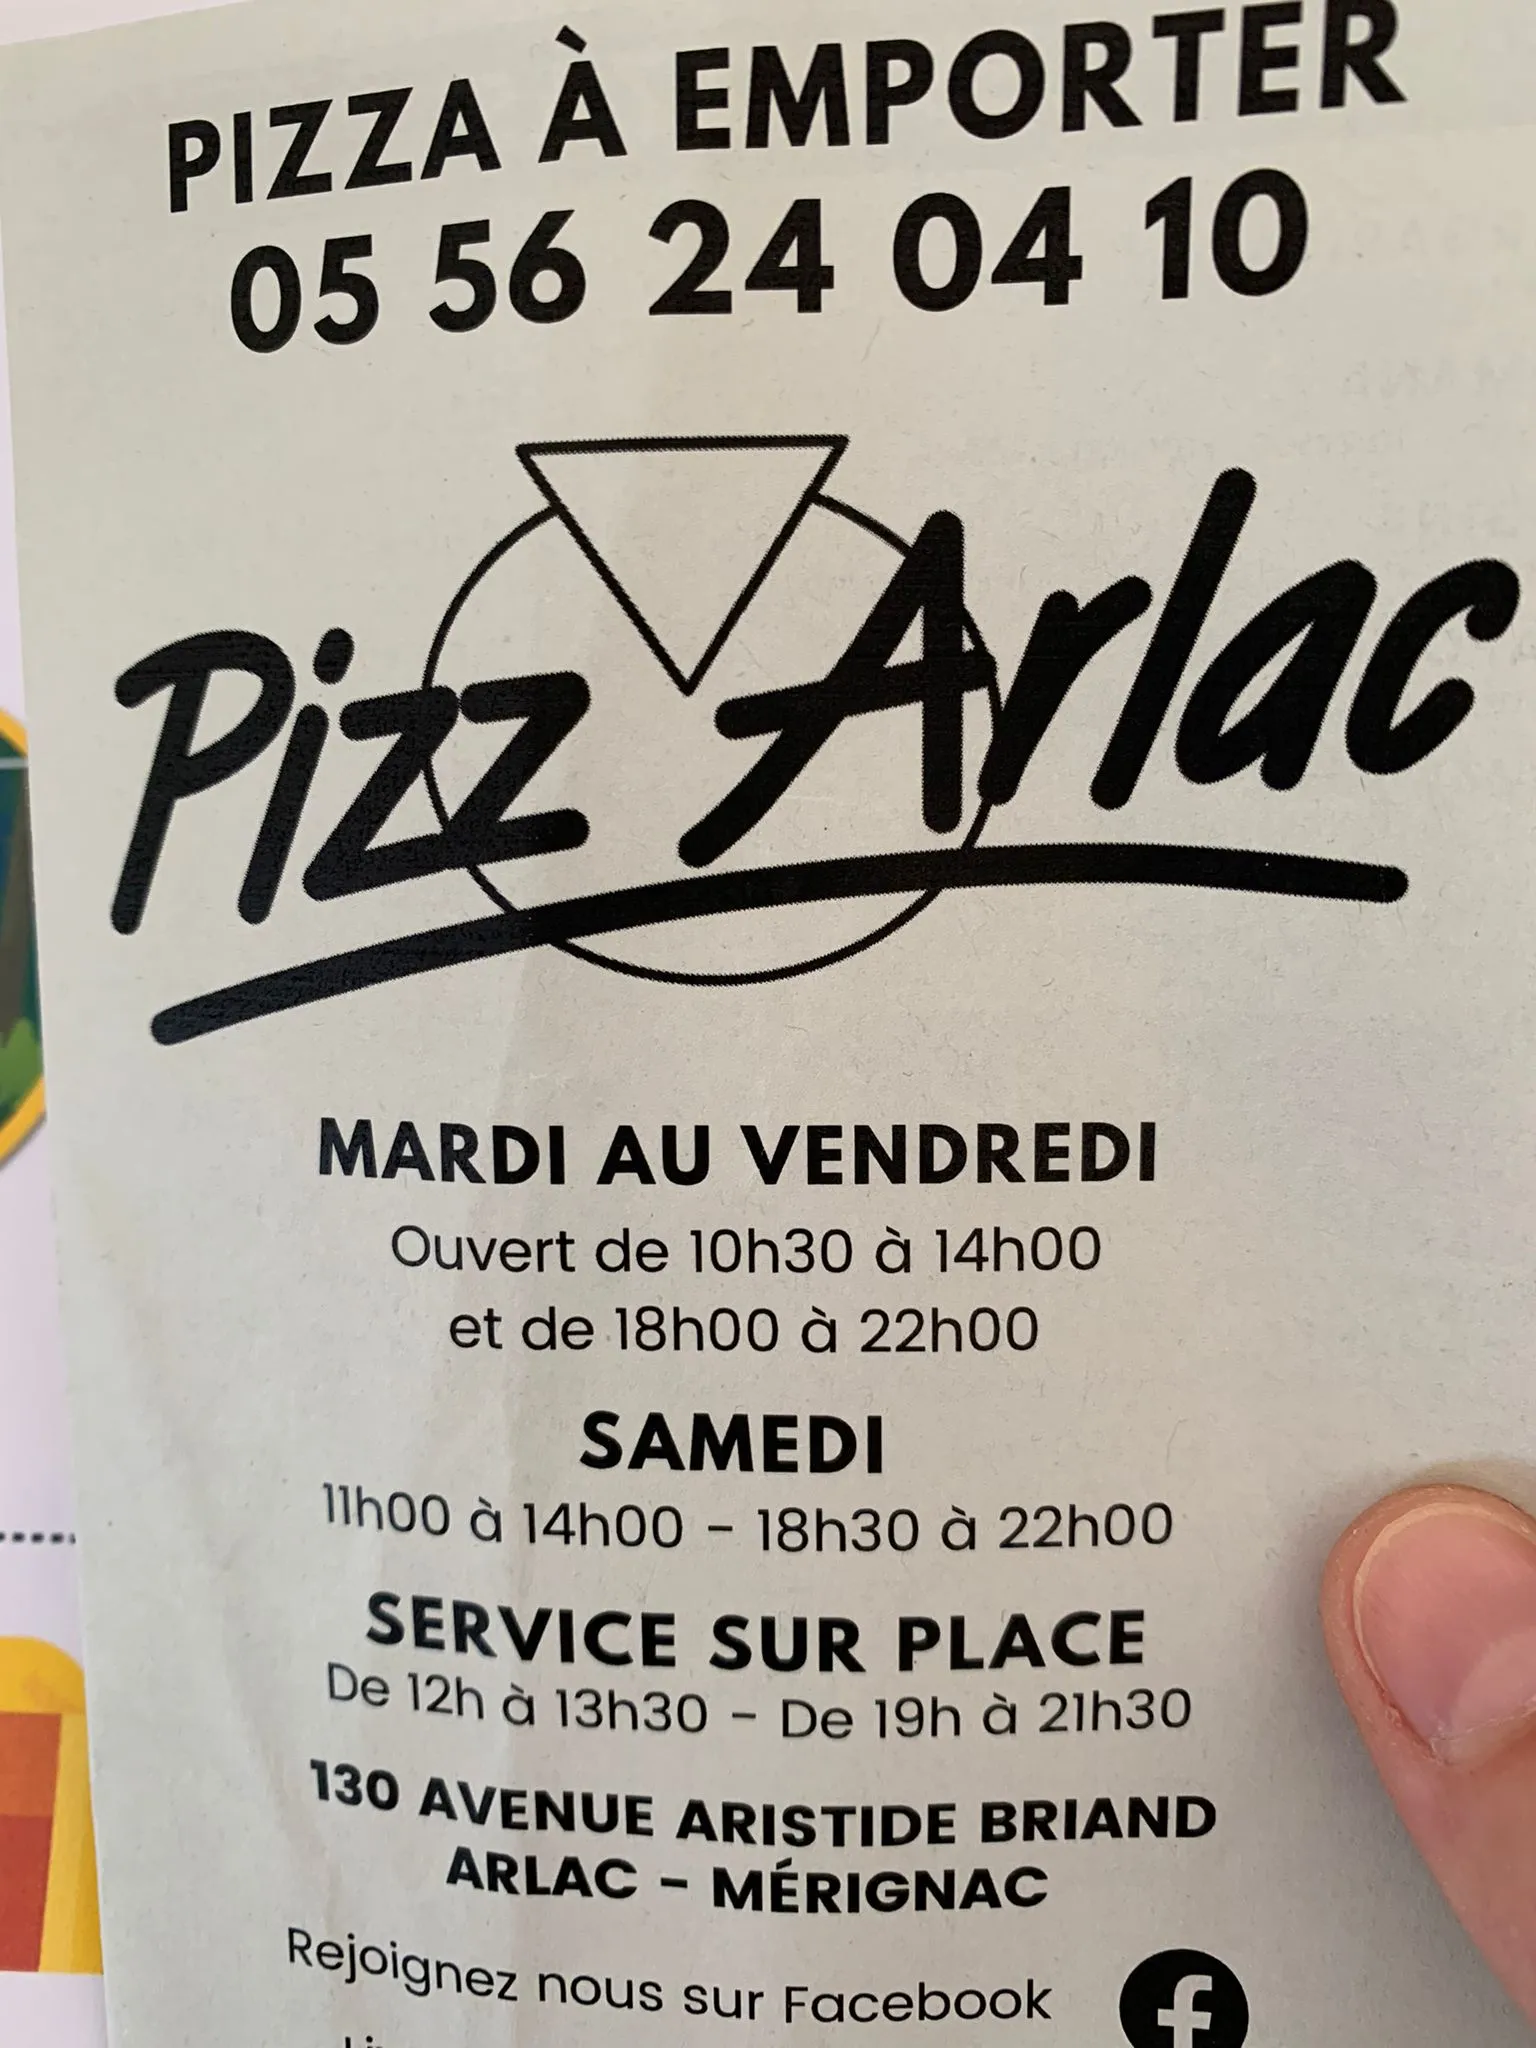 1 Pizza à 15€ offerte Pizzeria Arlac